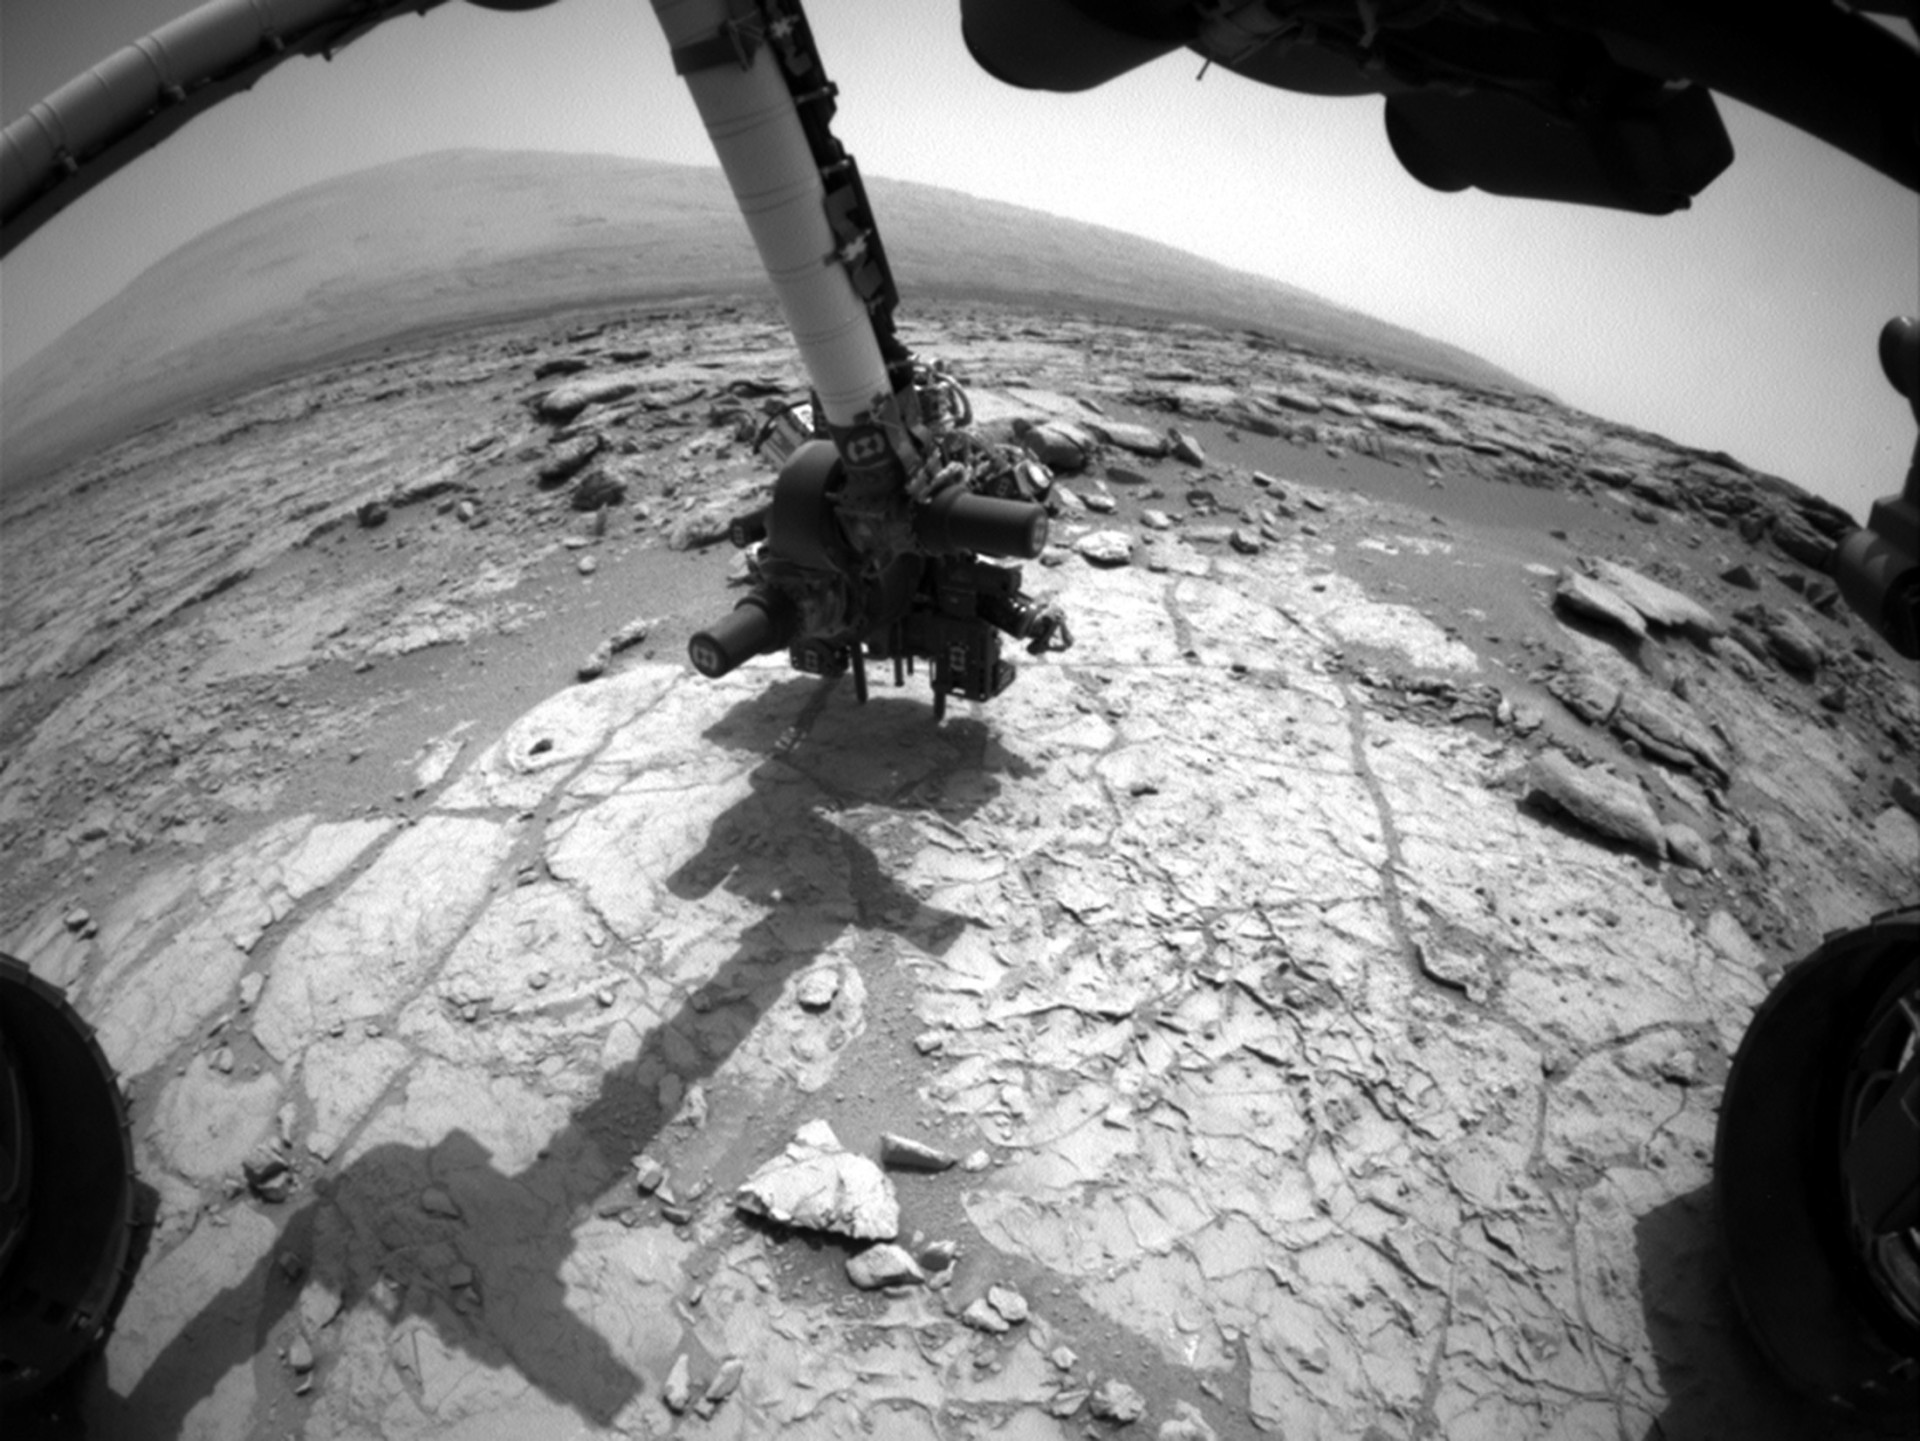 Esta é a broca de percussão no final do Curiosity Robotic Arm, que estava fazendo contato com a superfície rochosa em 27 de janeiro de 2013.